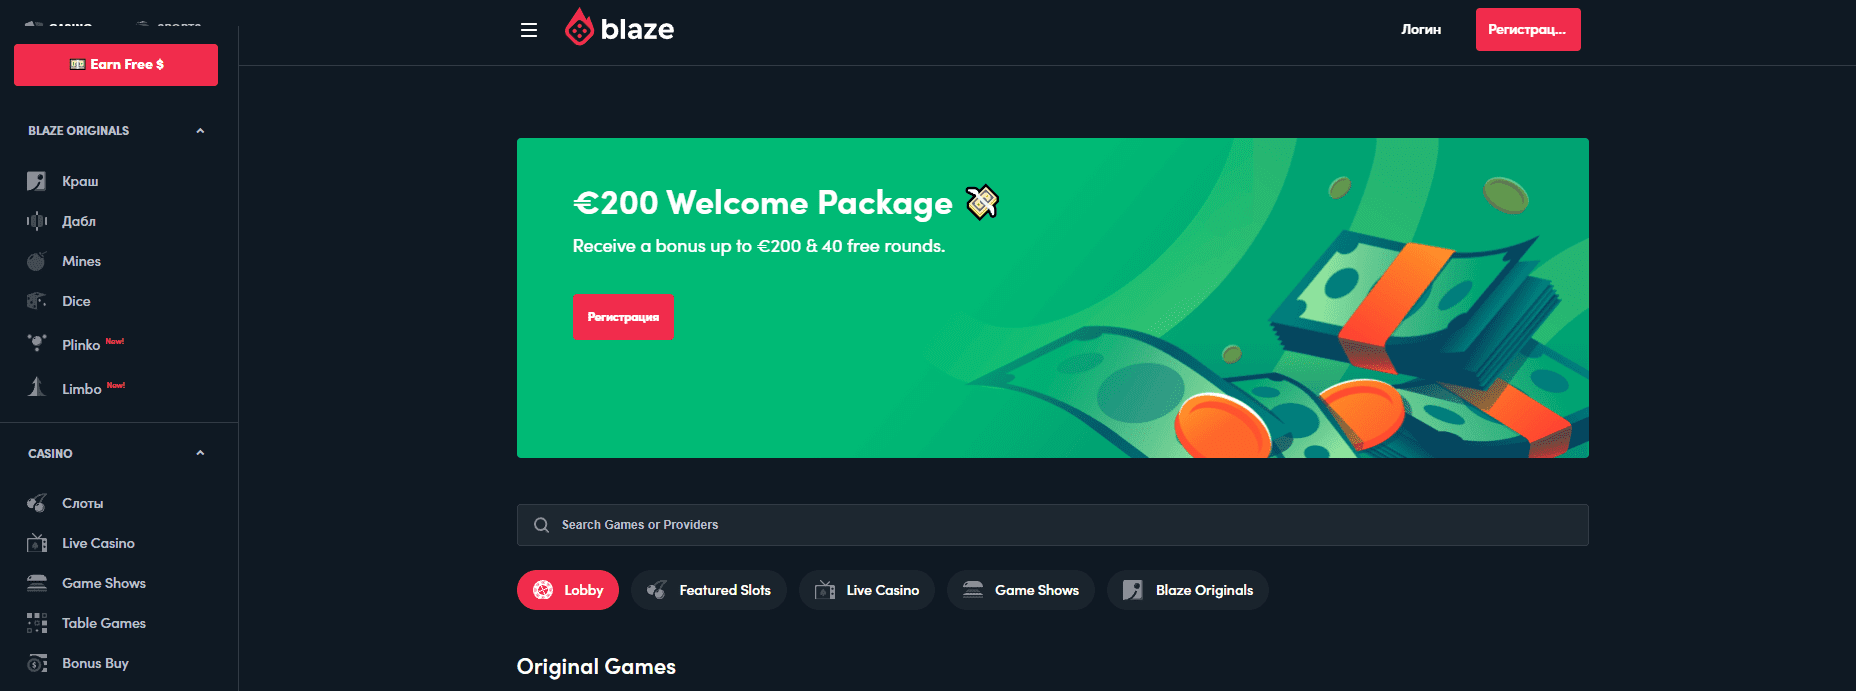 Blaze casino official site